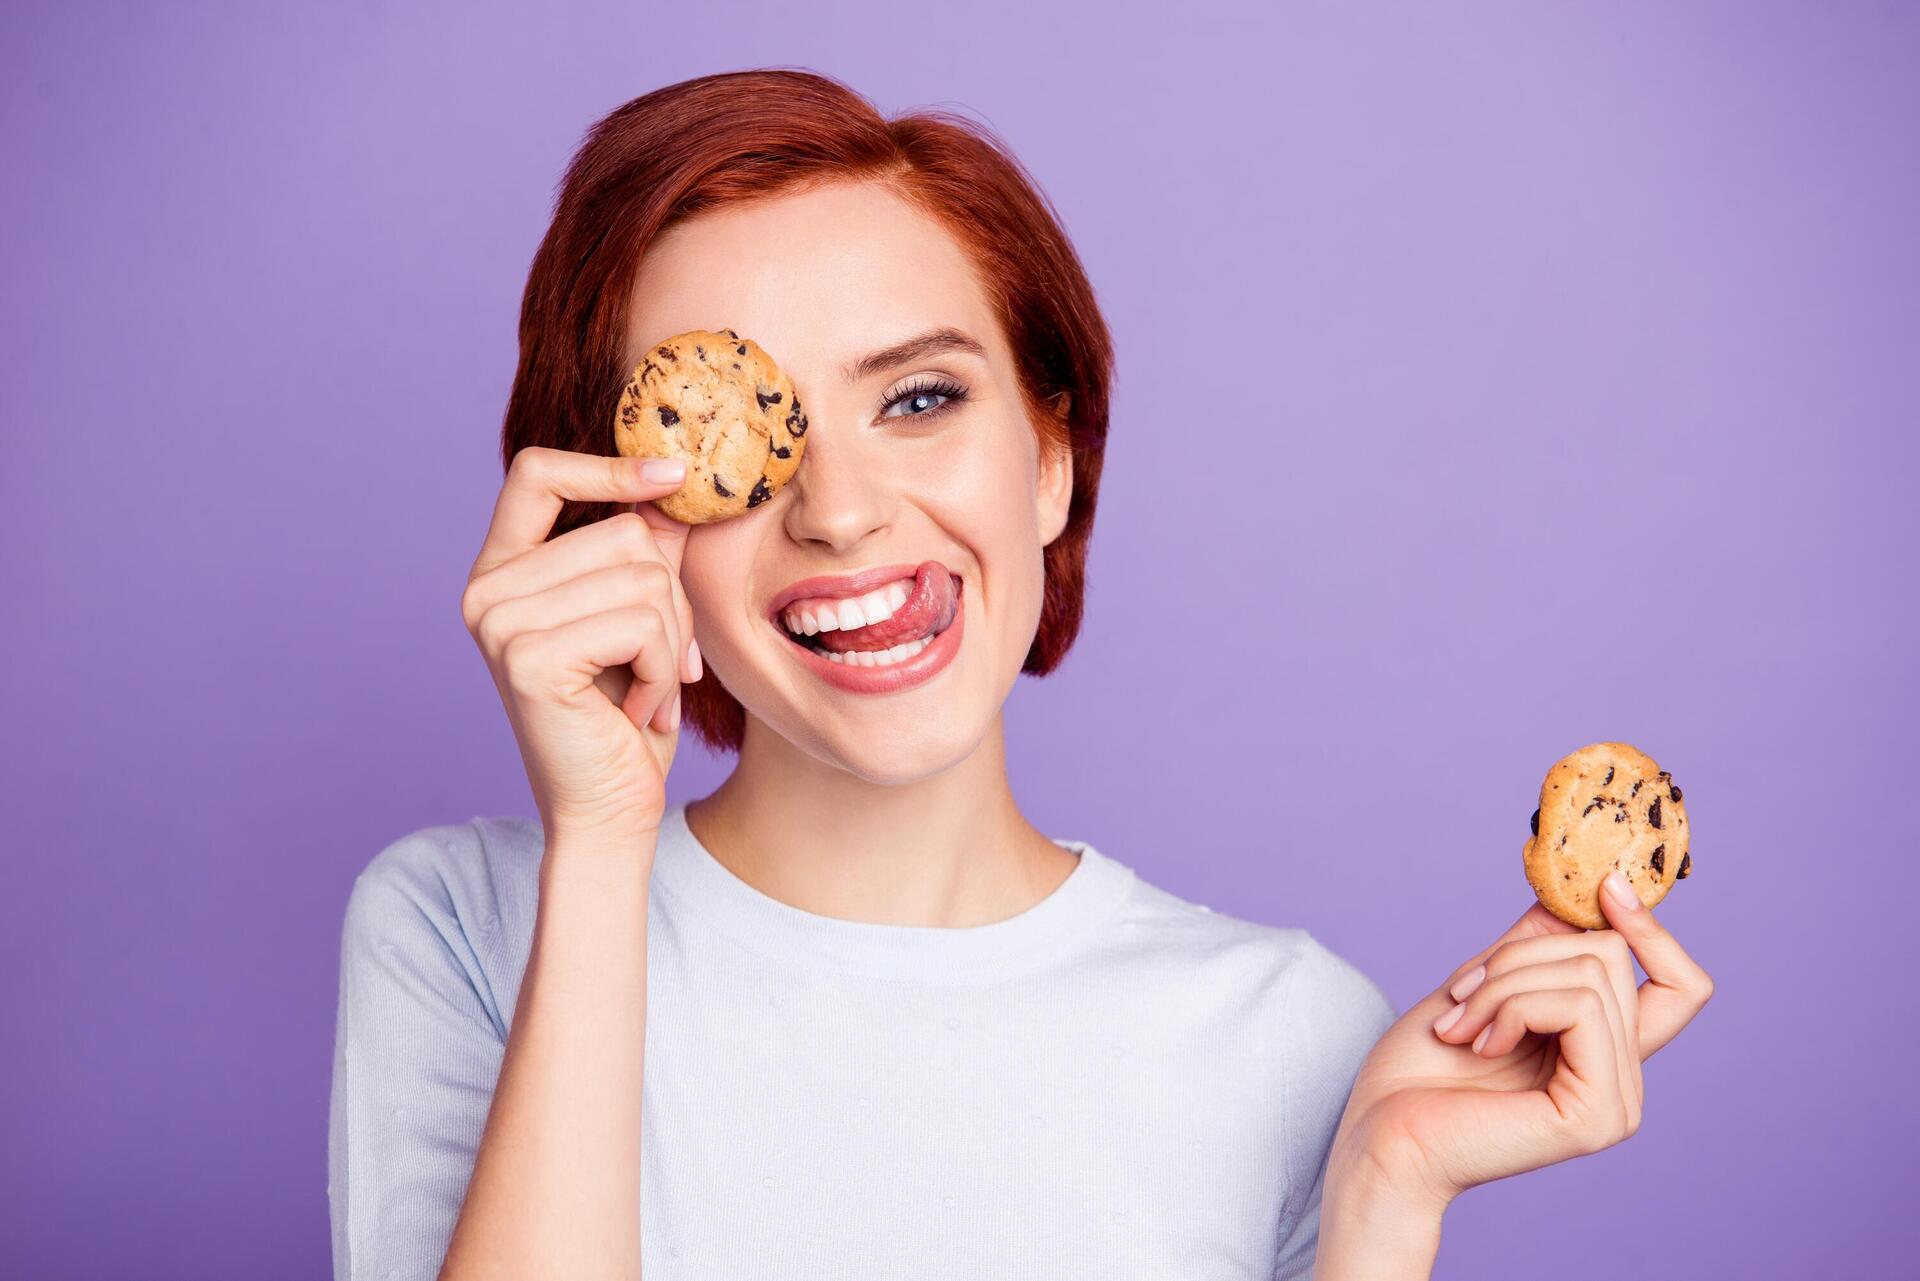 אישה מחייכת ומחזיקה עוגיות